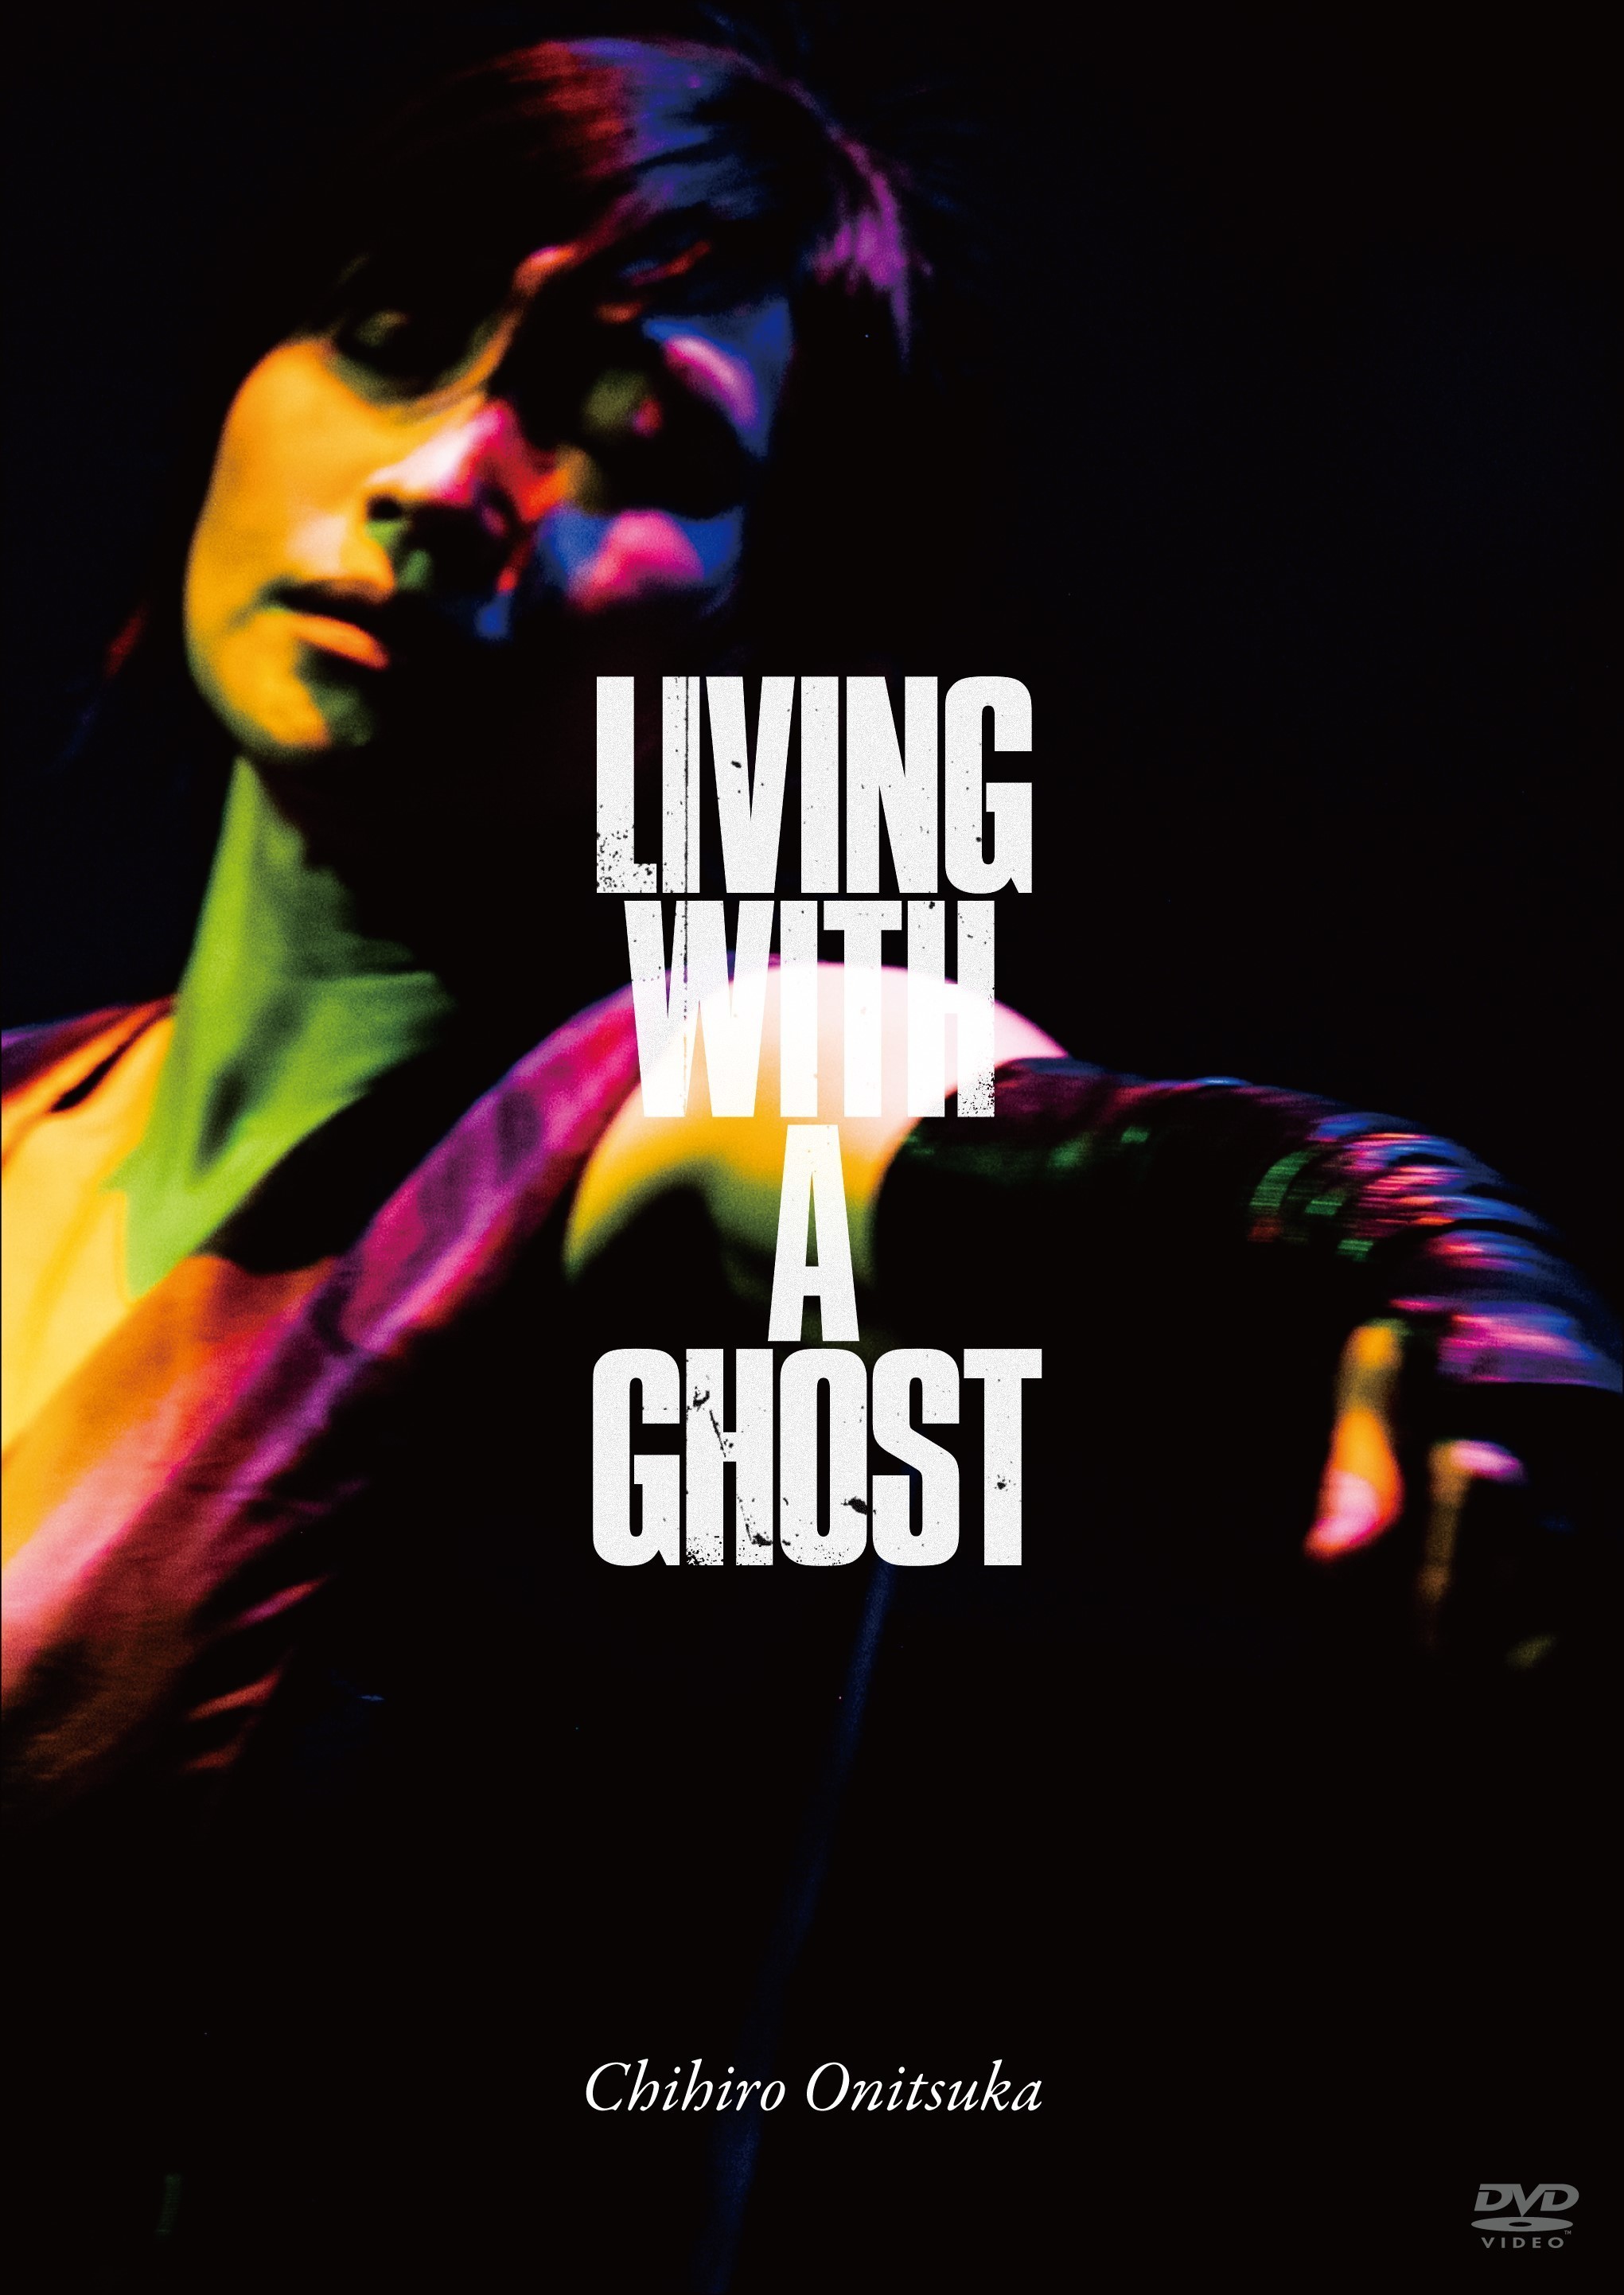 鬼束ちひろ (Chihiro Onitsuka) - LIVING WITH A GHOST (2021) [Blu-ray ISO + MP4]